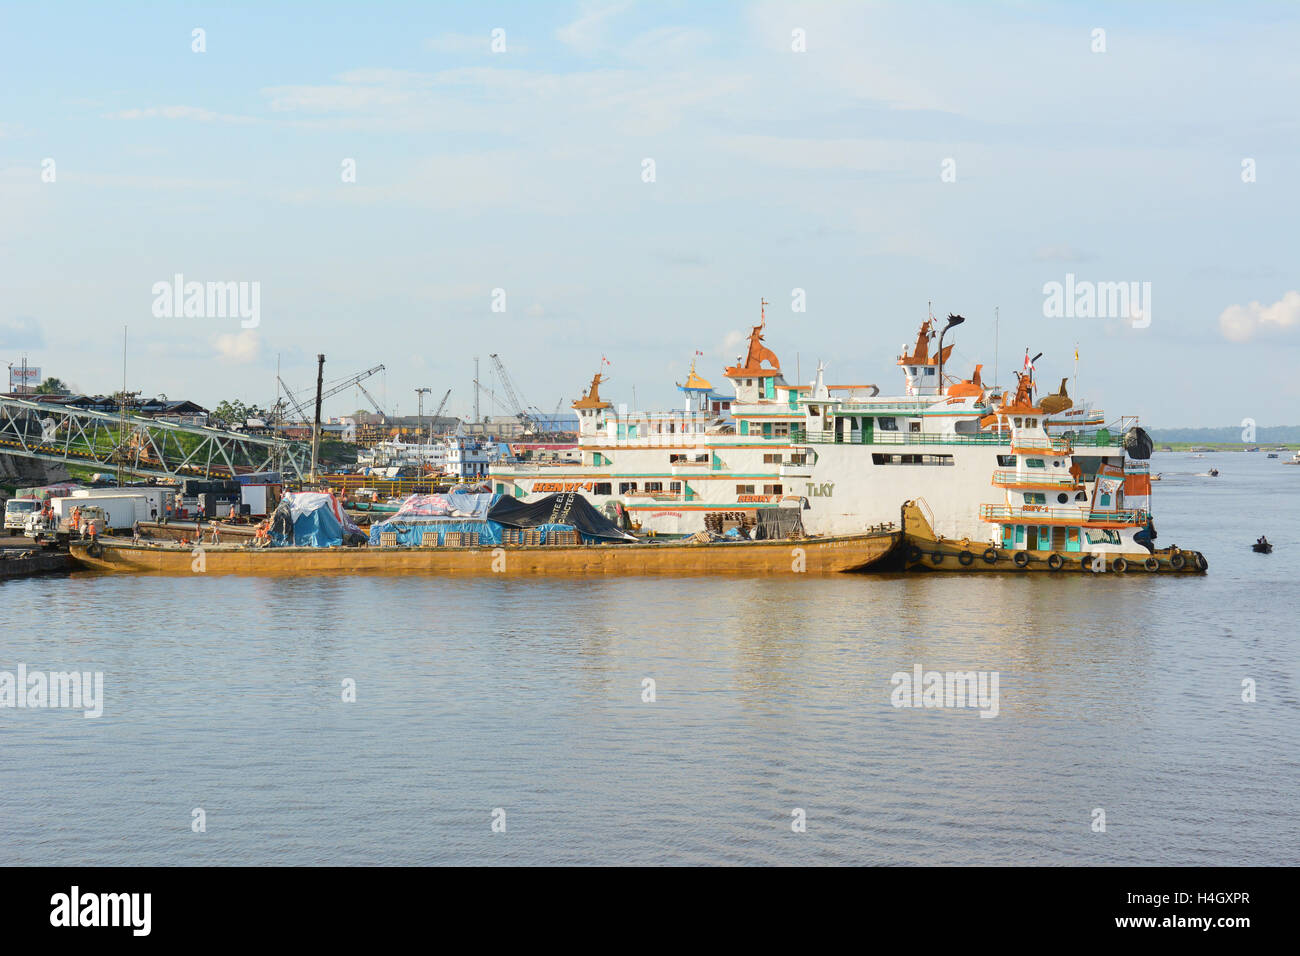 IQUITOS, Perù - Ottobre 16, 2015: Cantiere navale sul fiume Itaya. Iquitos è la più grande metropoli dell'Amazzonia peruviana, e Foto Stock